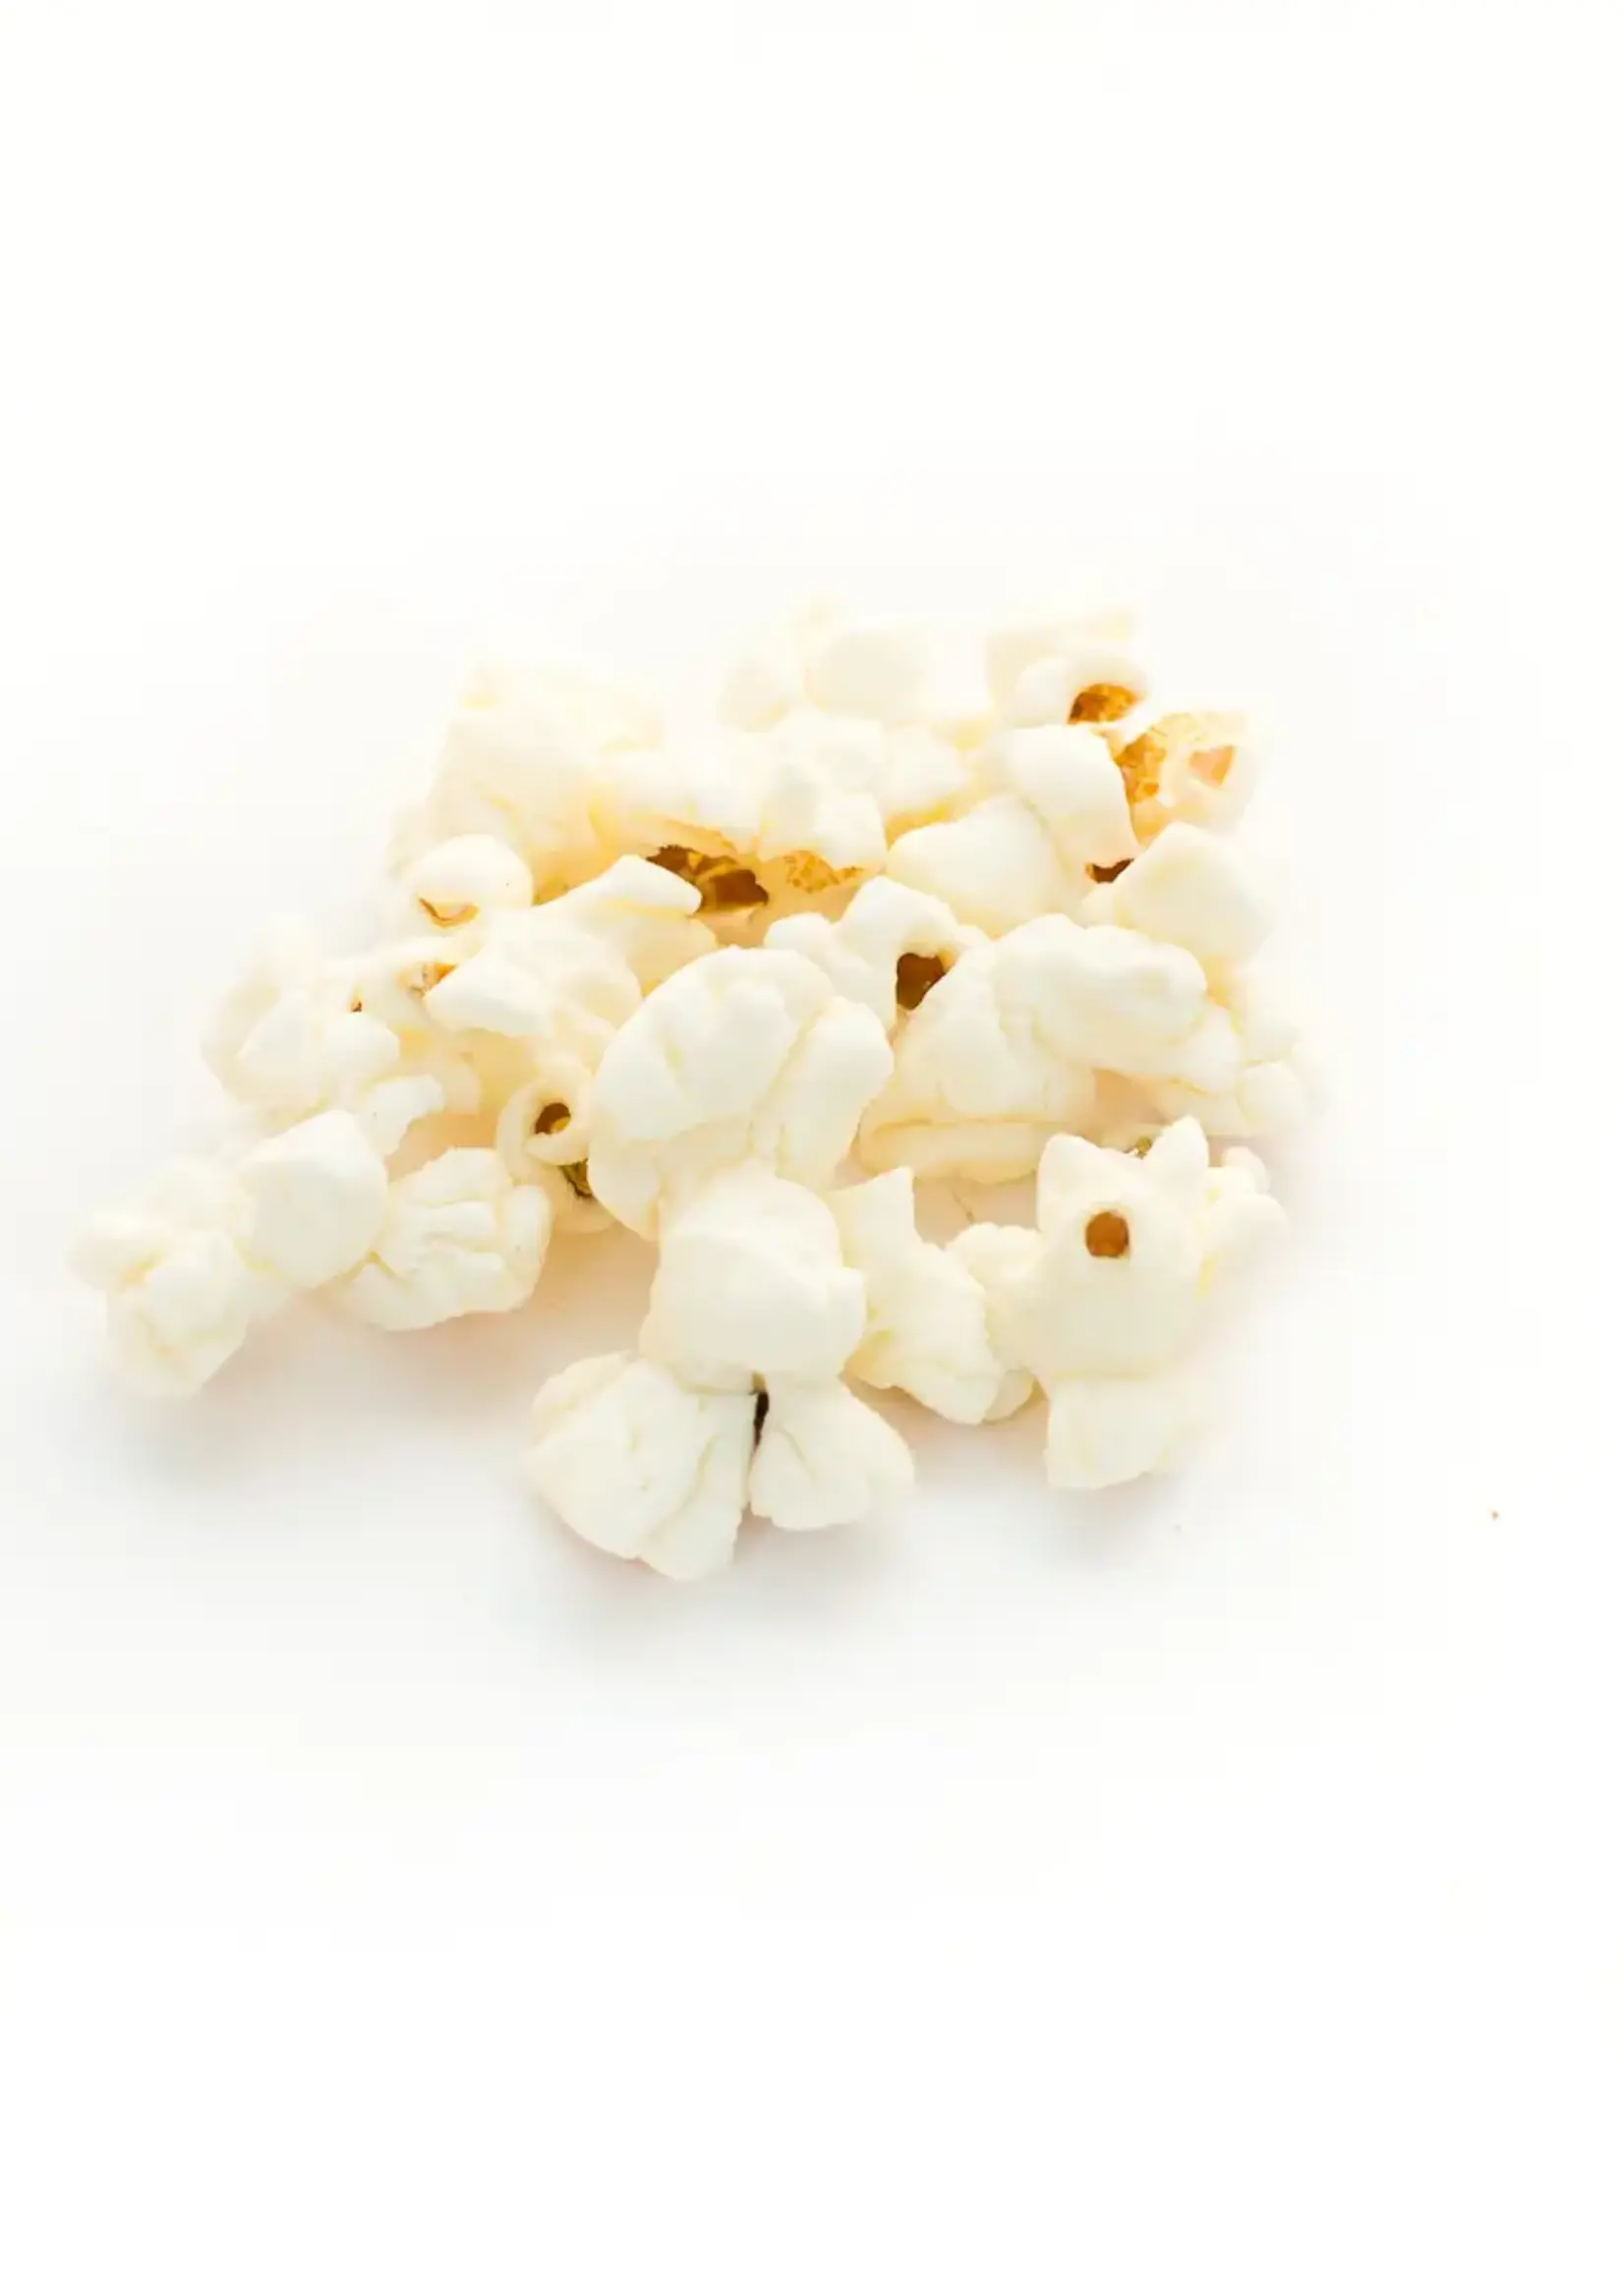 Poppy Handcrafted Popcorn White Cheddar Popcorn